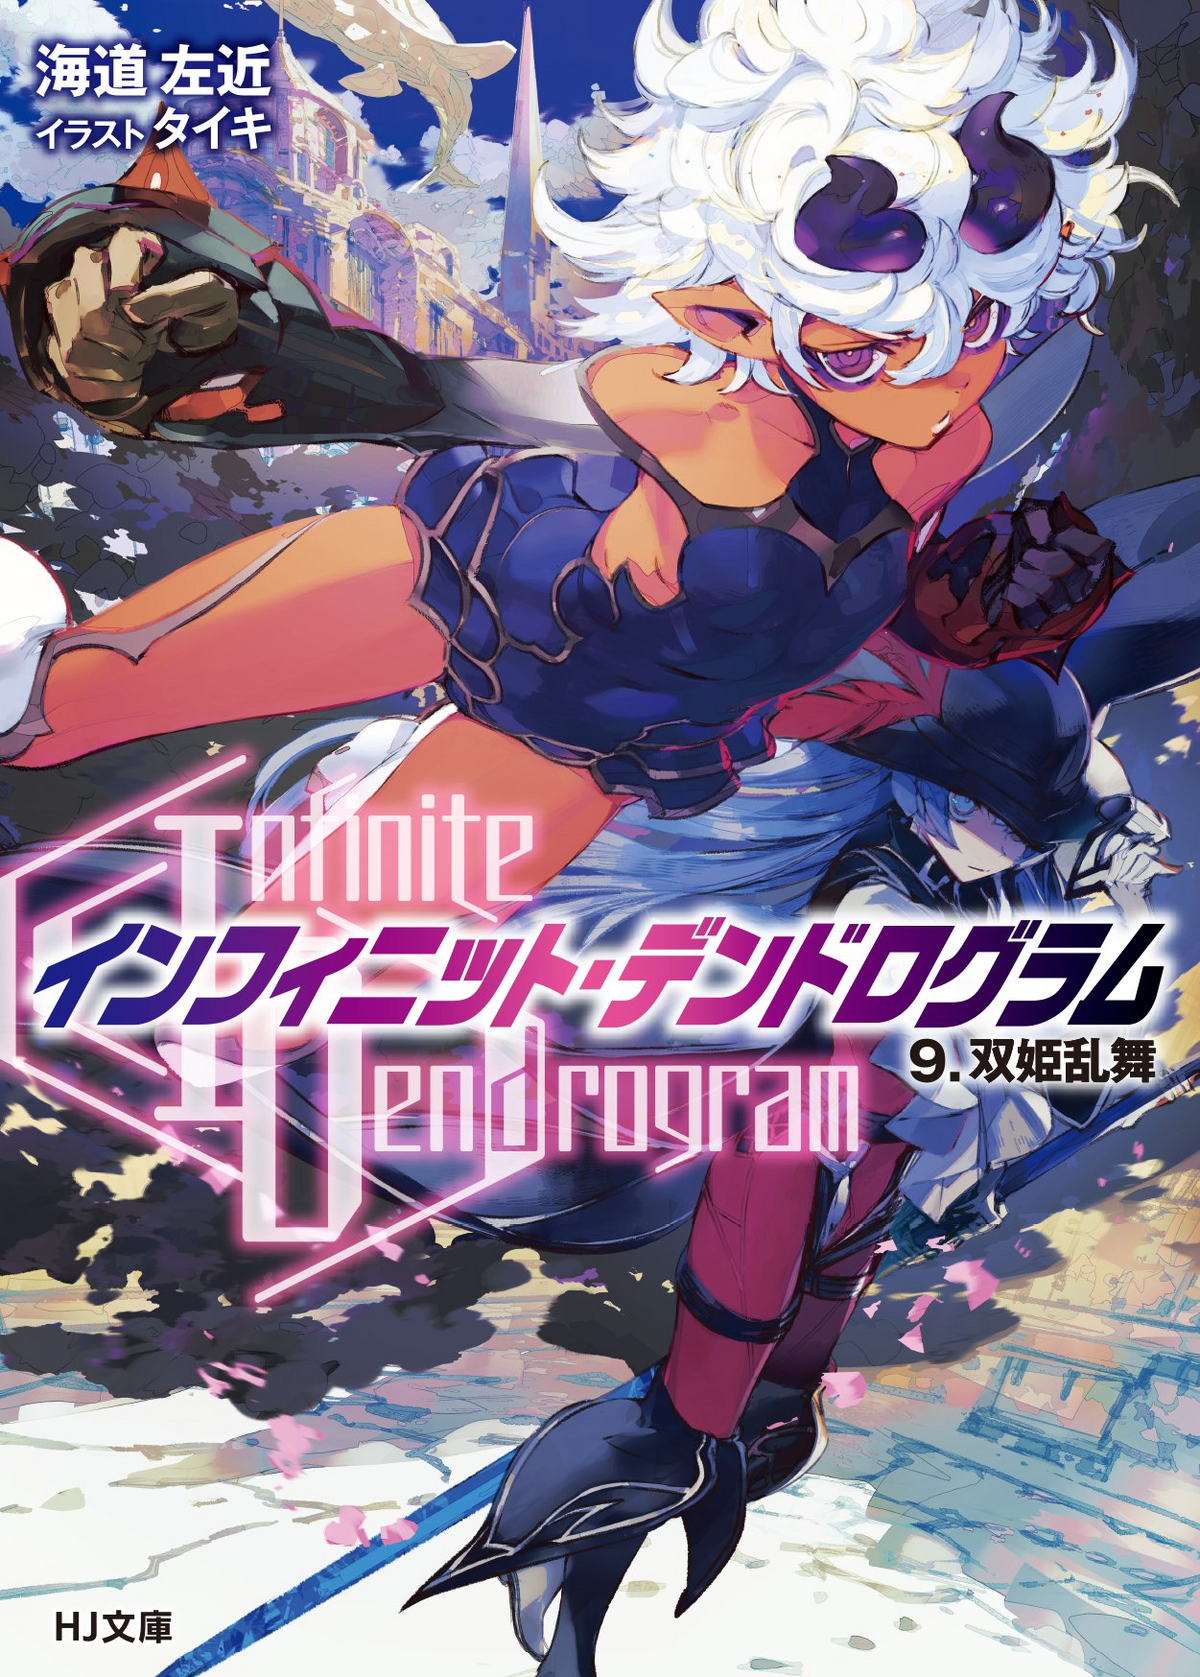 Infinite Dendrogram Vol. 8 (Light Novel) 100% OFF - Tokyo Otaku Mode (TOM)